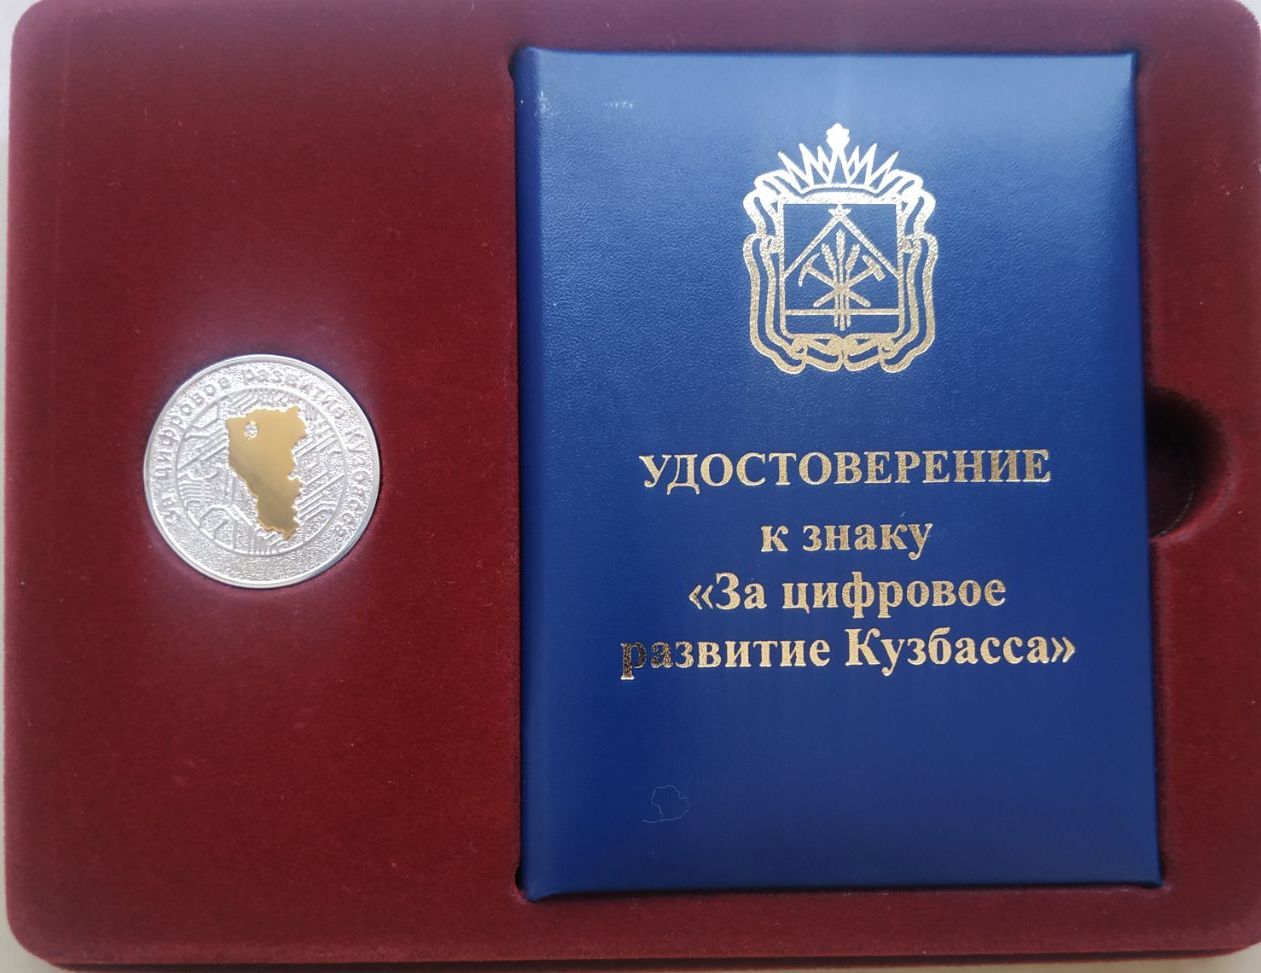 Заместитель начальника Архивного управления Кузбасса Н.А. Юматова награждена нагрудным знаком «За цифровое развитие Кузбасса»